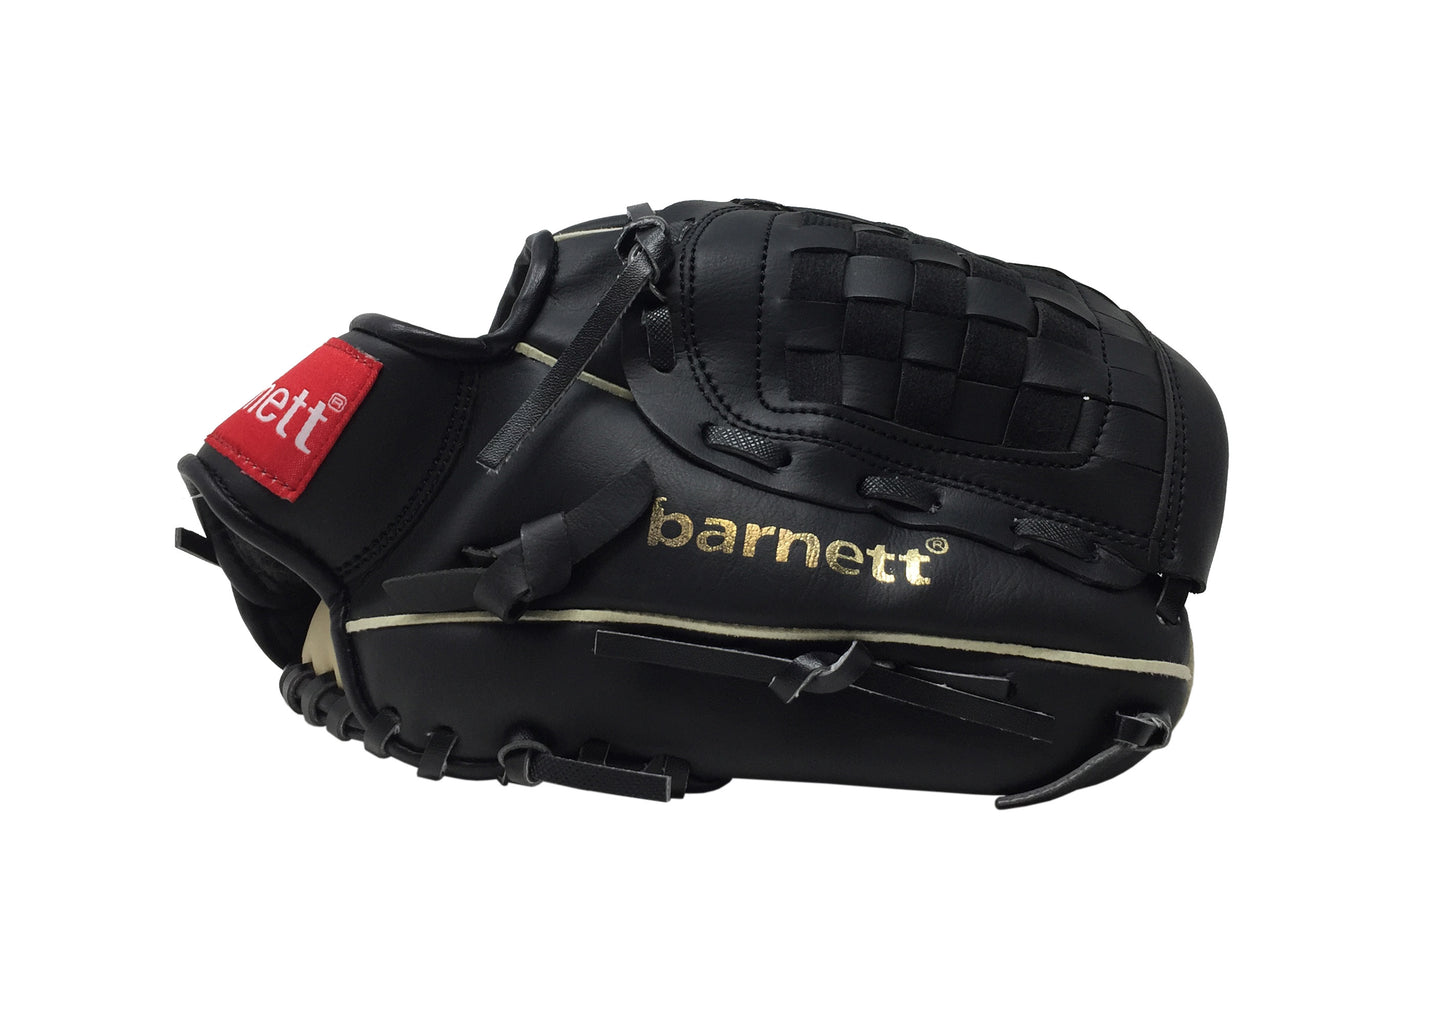 JL-102 Baseballová rukavice pro zacátečníky, infield, vel. 10.25, černá